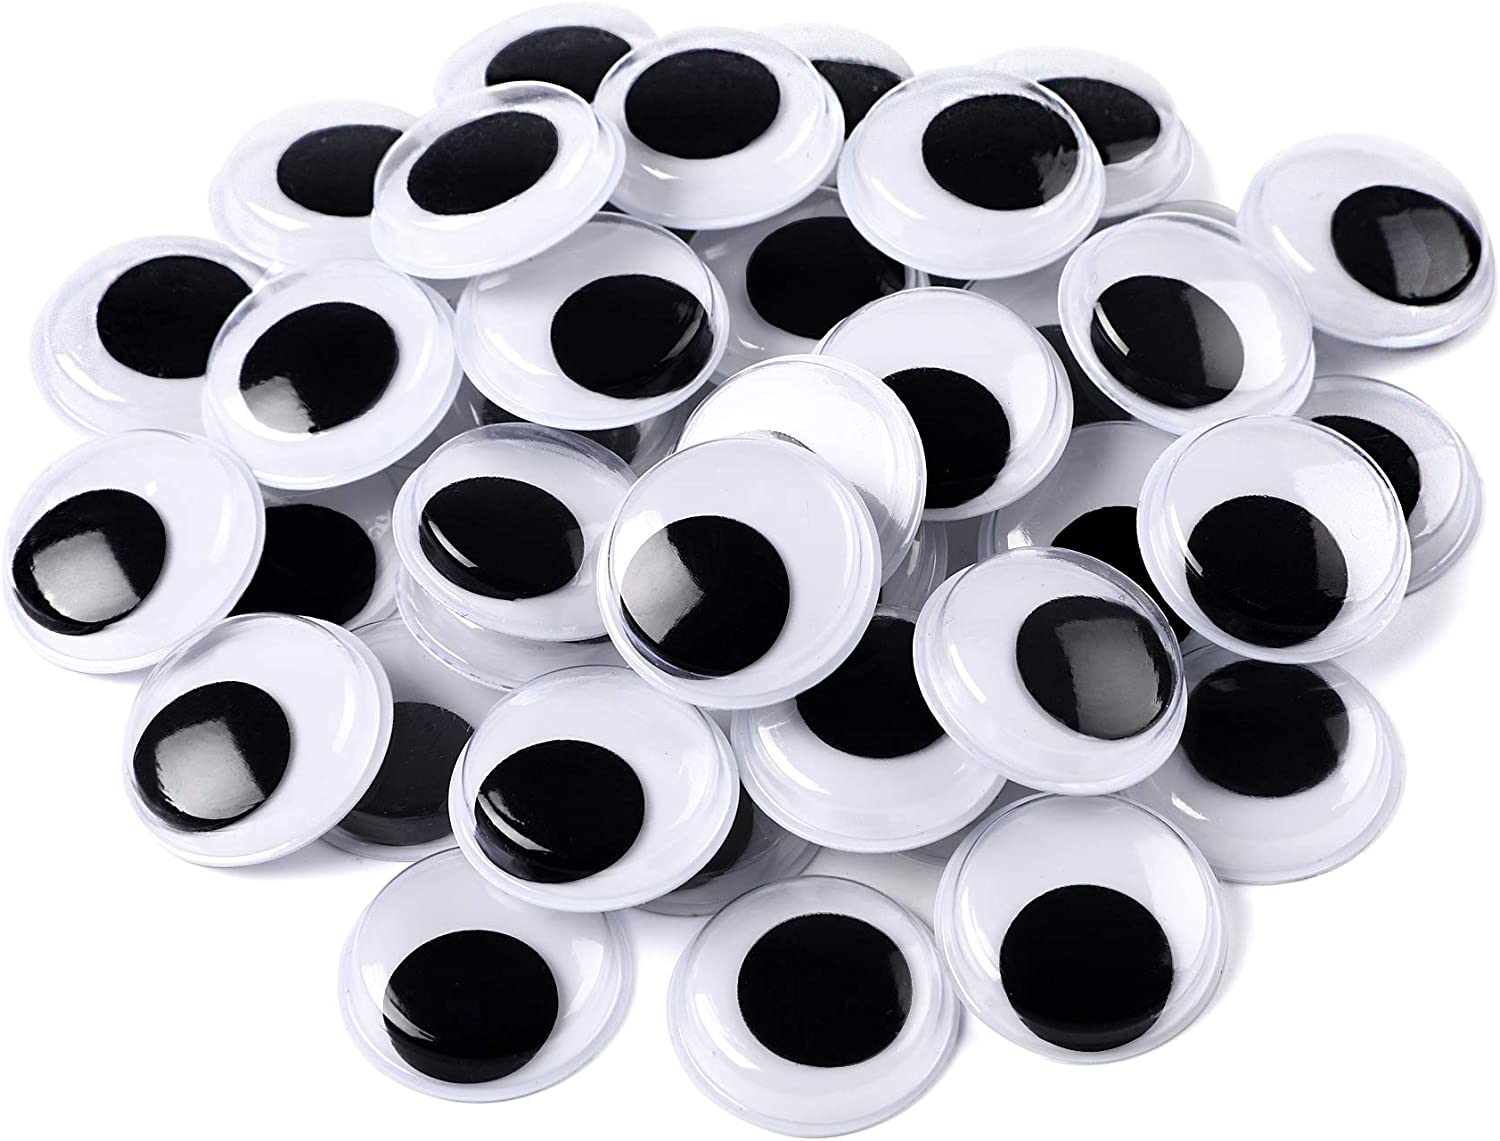  150Pcs Large Safety Eyes For Amigurumi Plastic